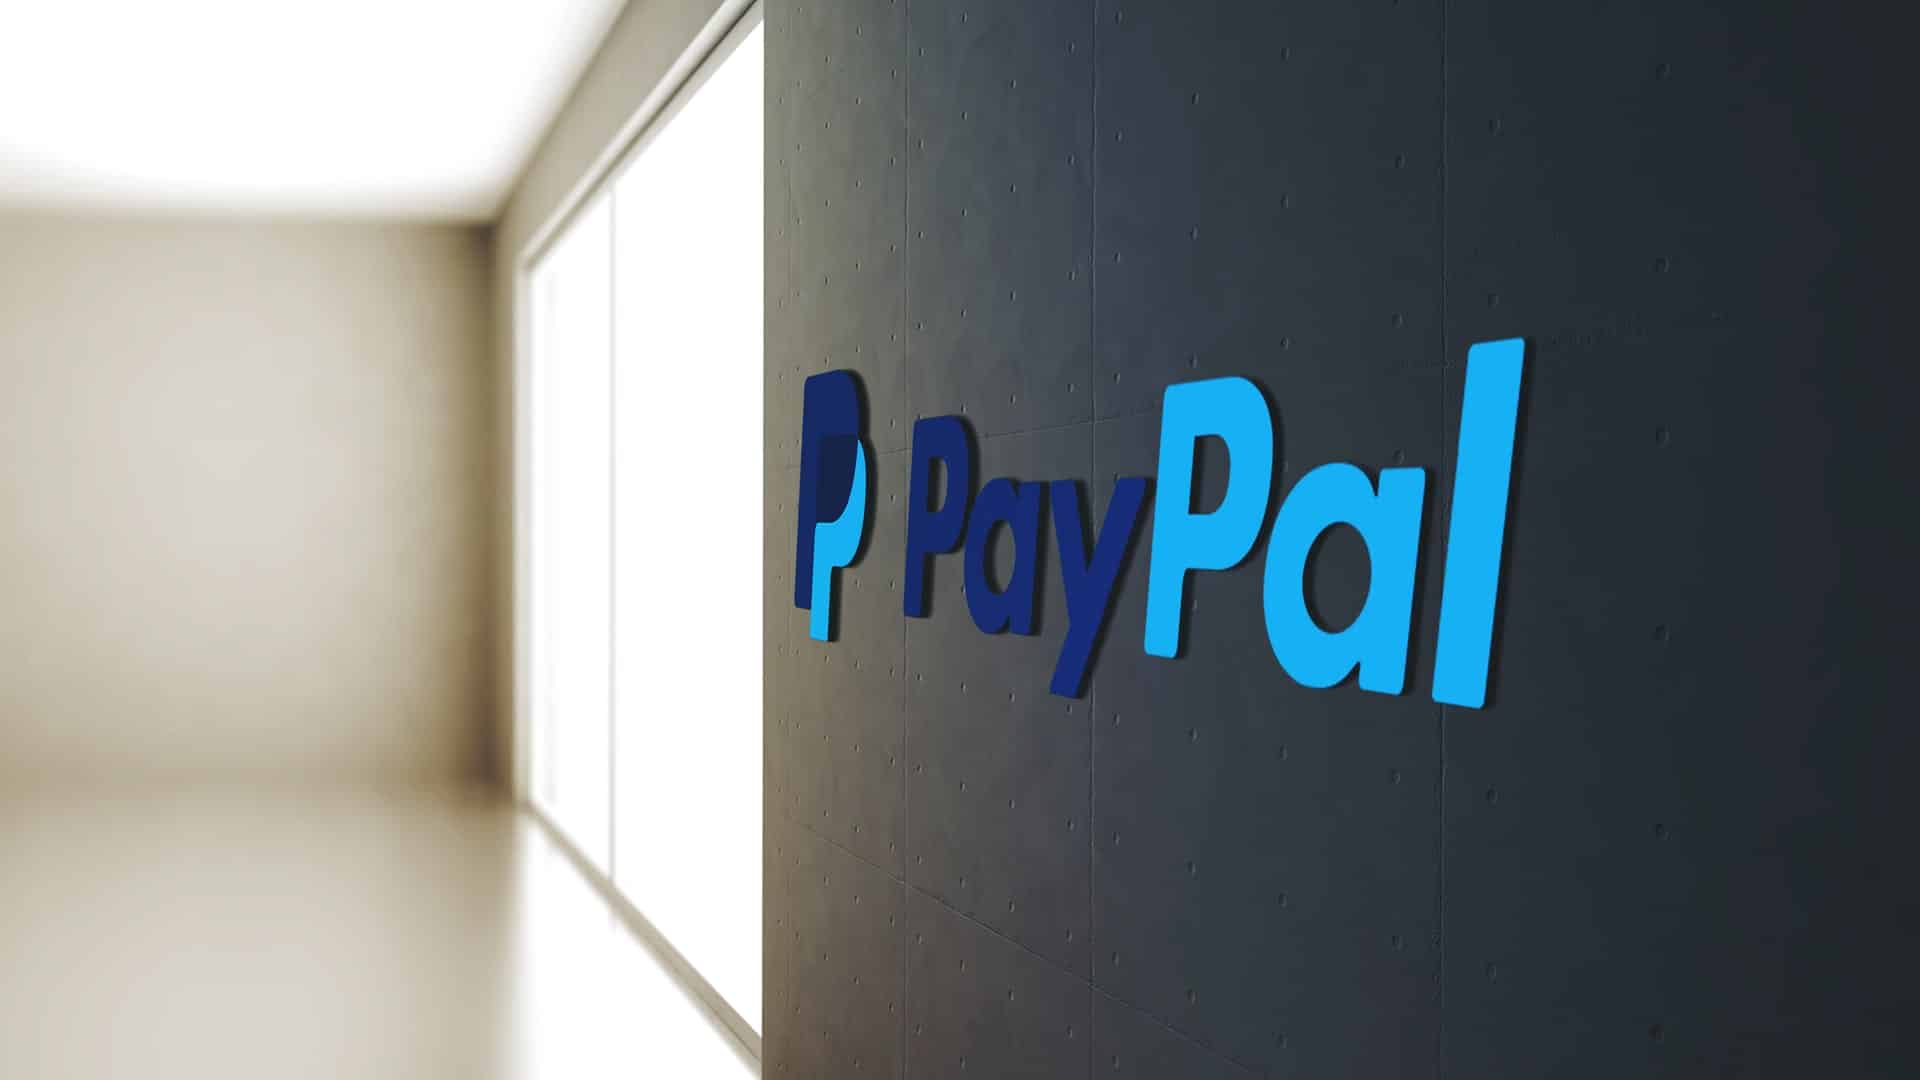 Paypal potvrdzuje plány na spustenie stablecoinu!